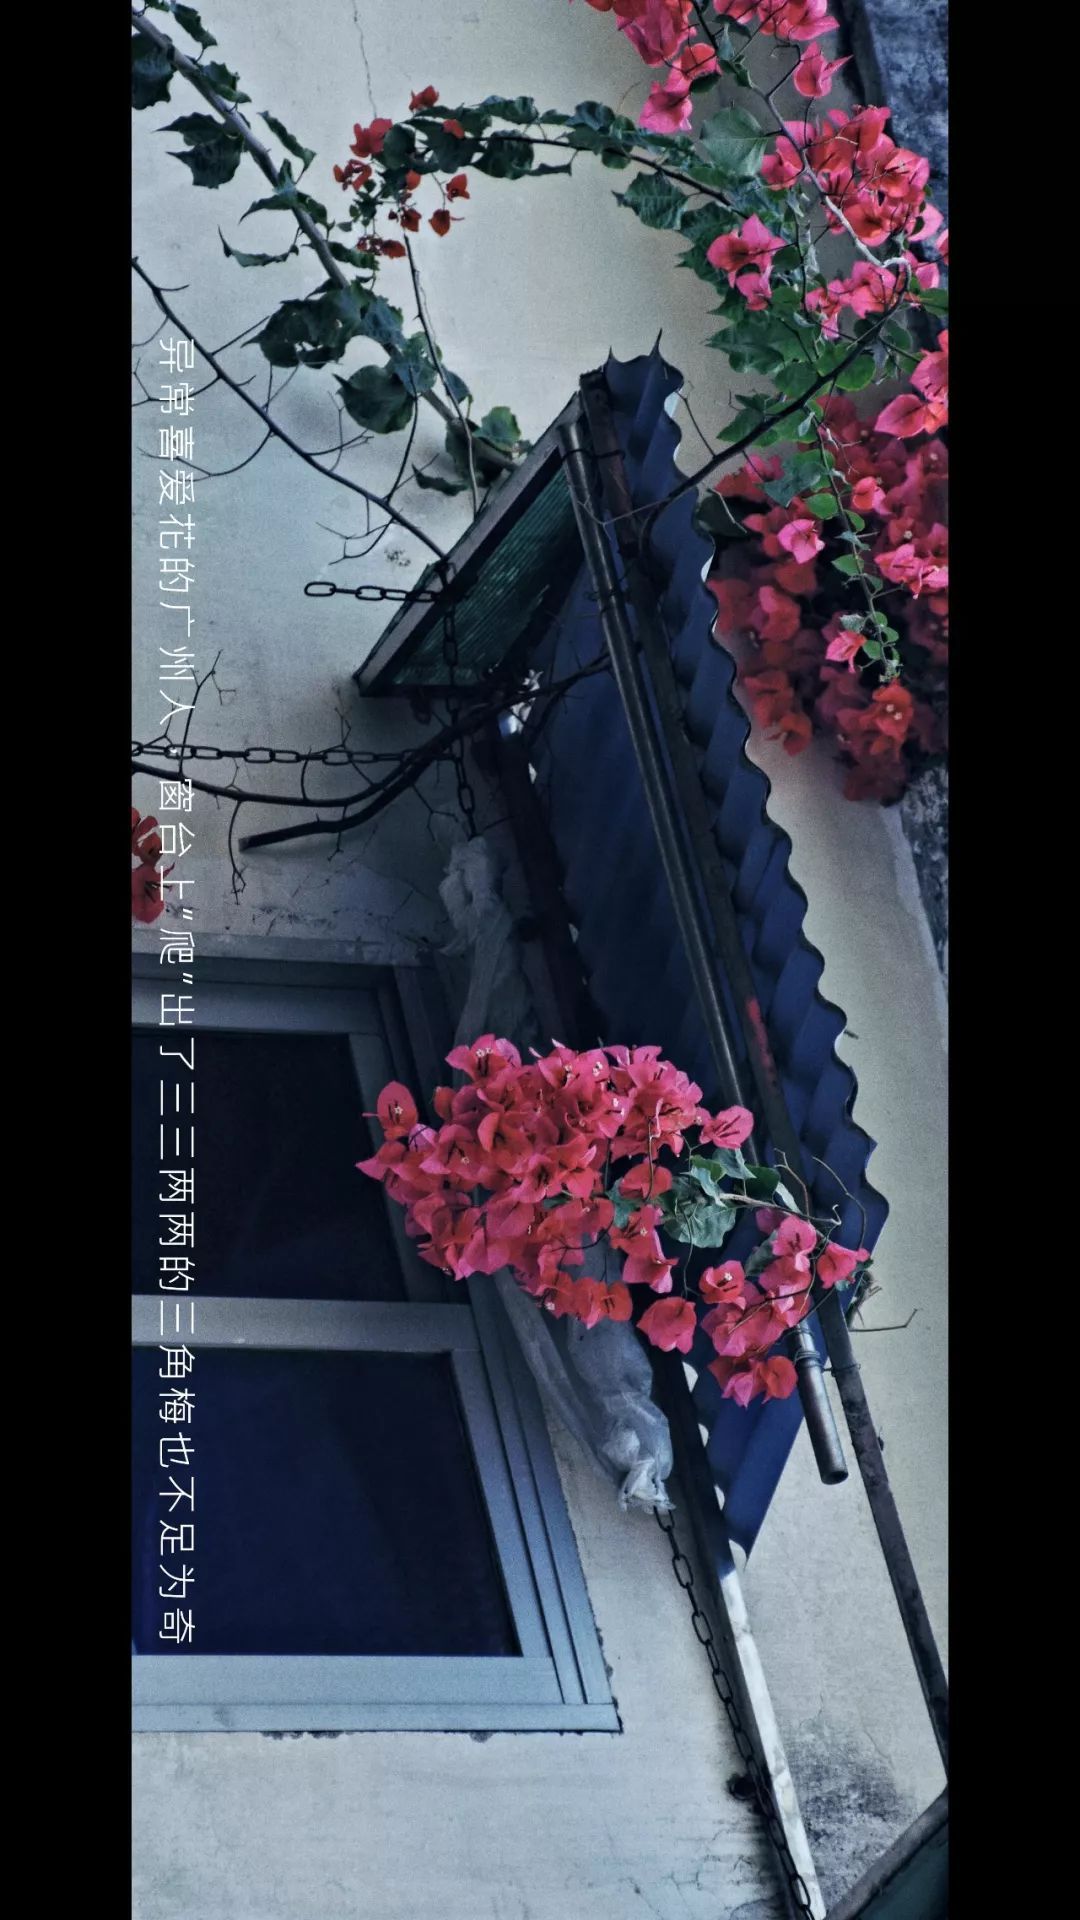 我们把广州街头的日与夜拍成了一部微电影